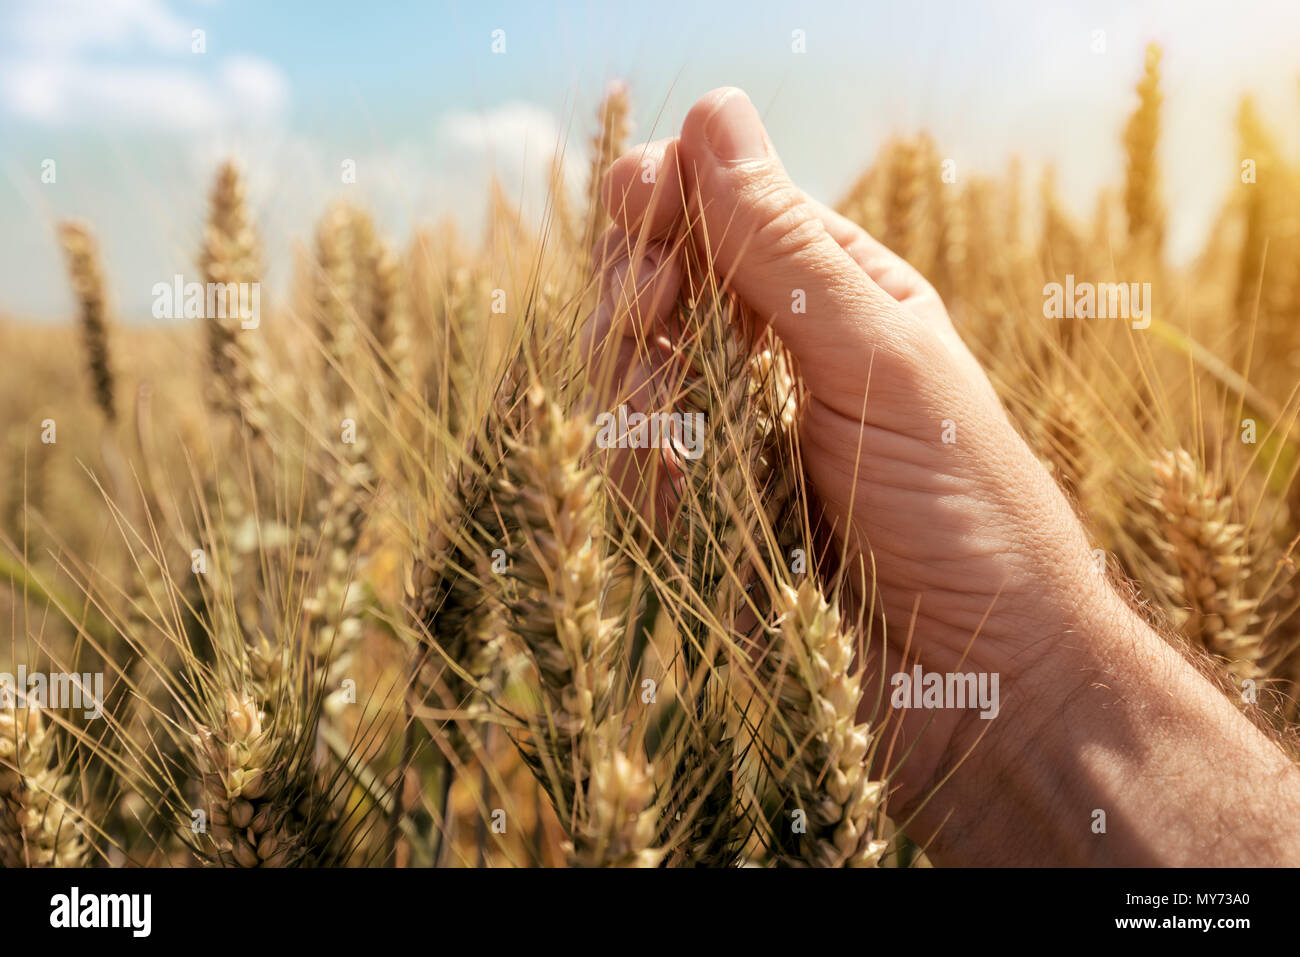 L'examen de cultures de blé, Close up of hand touching usine de céréales en champ cultivé Banque D'Images